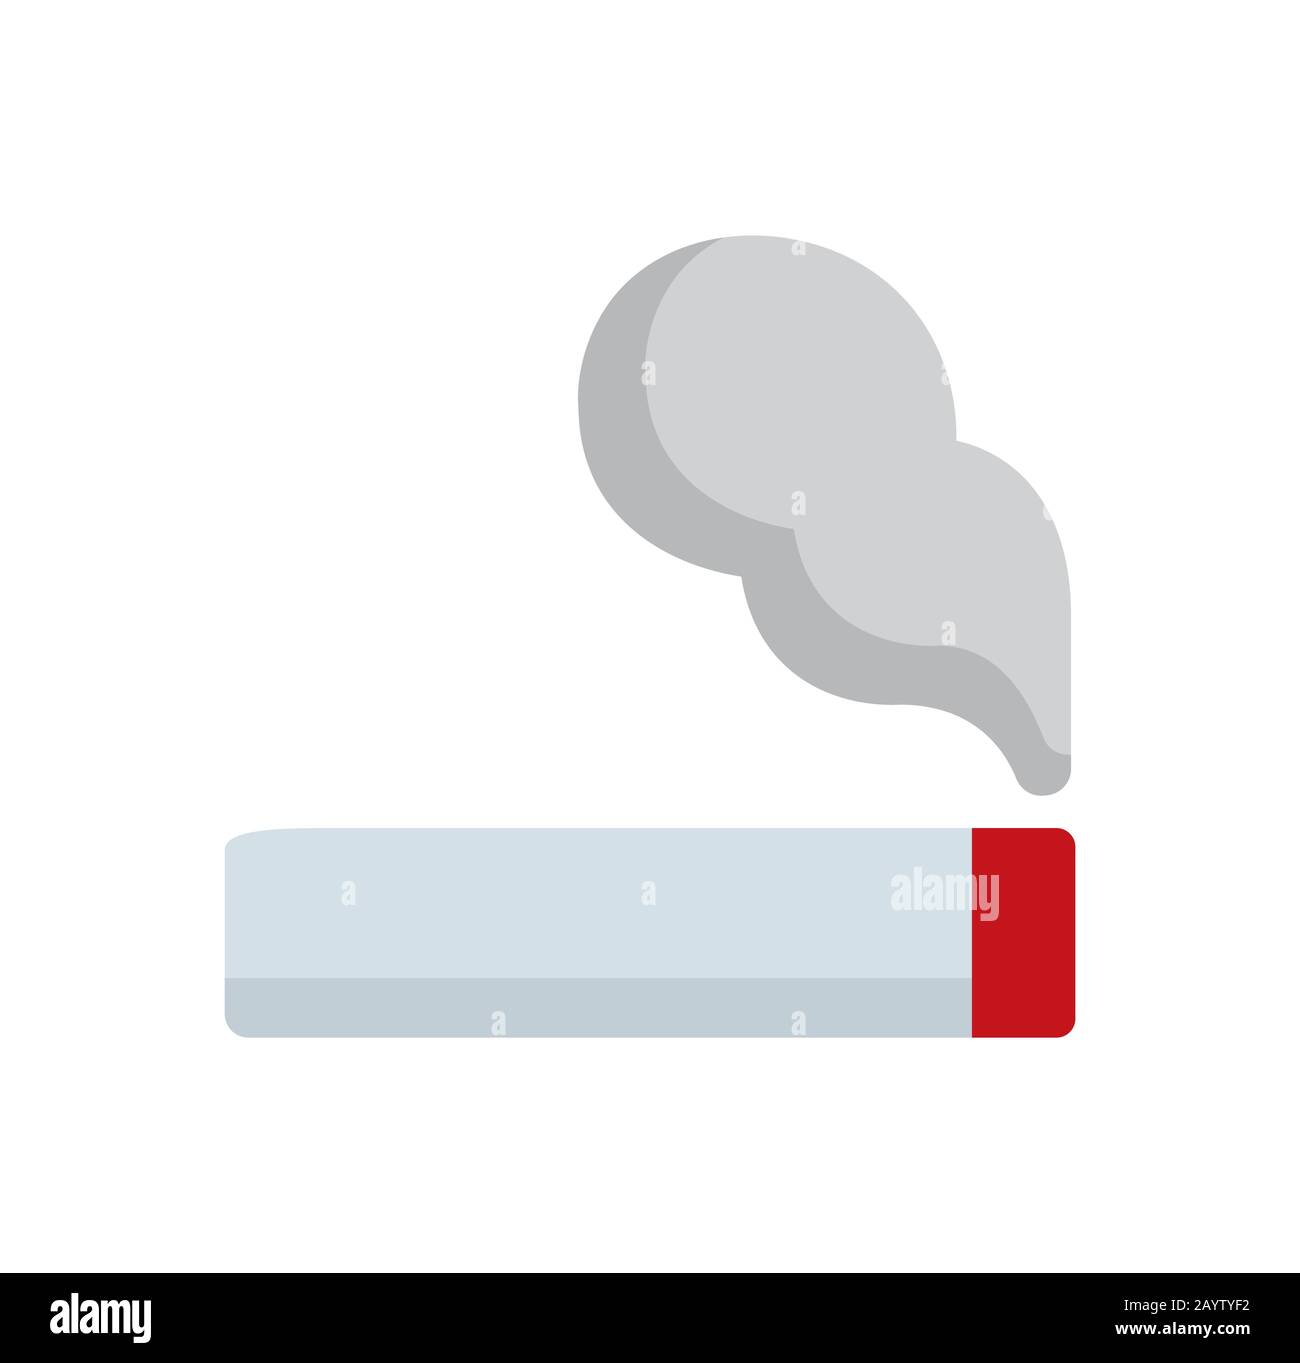 Symbol für Rauchen/Zigarette/Tabak Stock Vektor